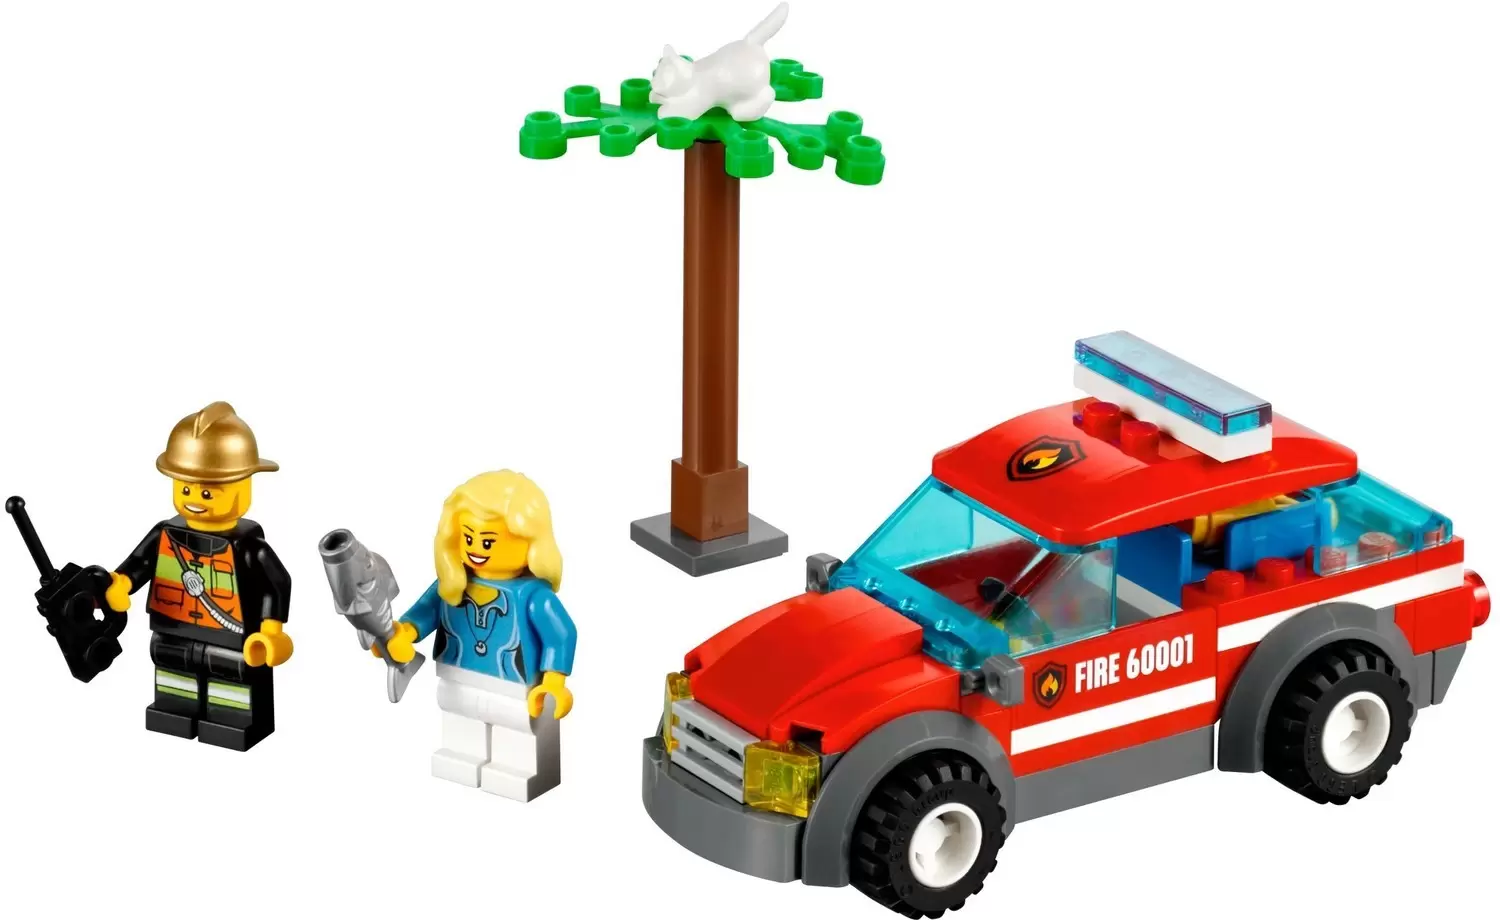 LEGO CITY - Fire Chief Car